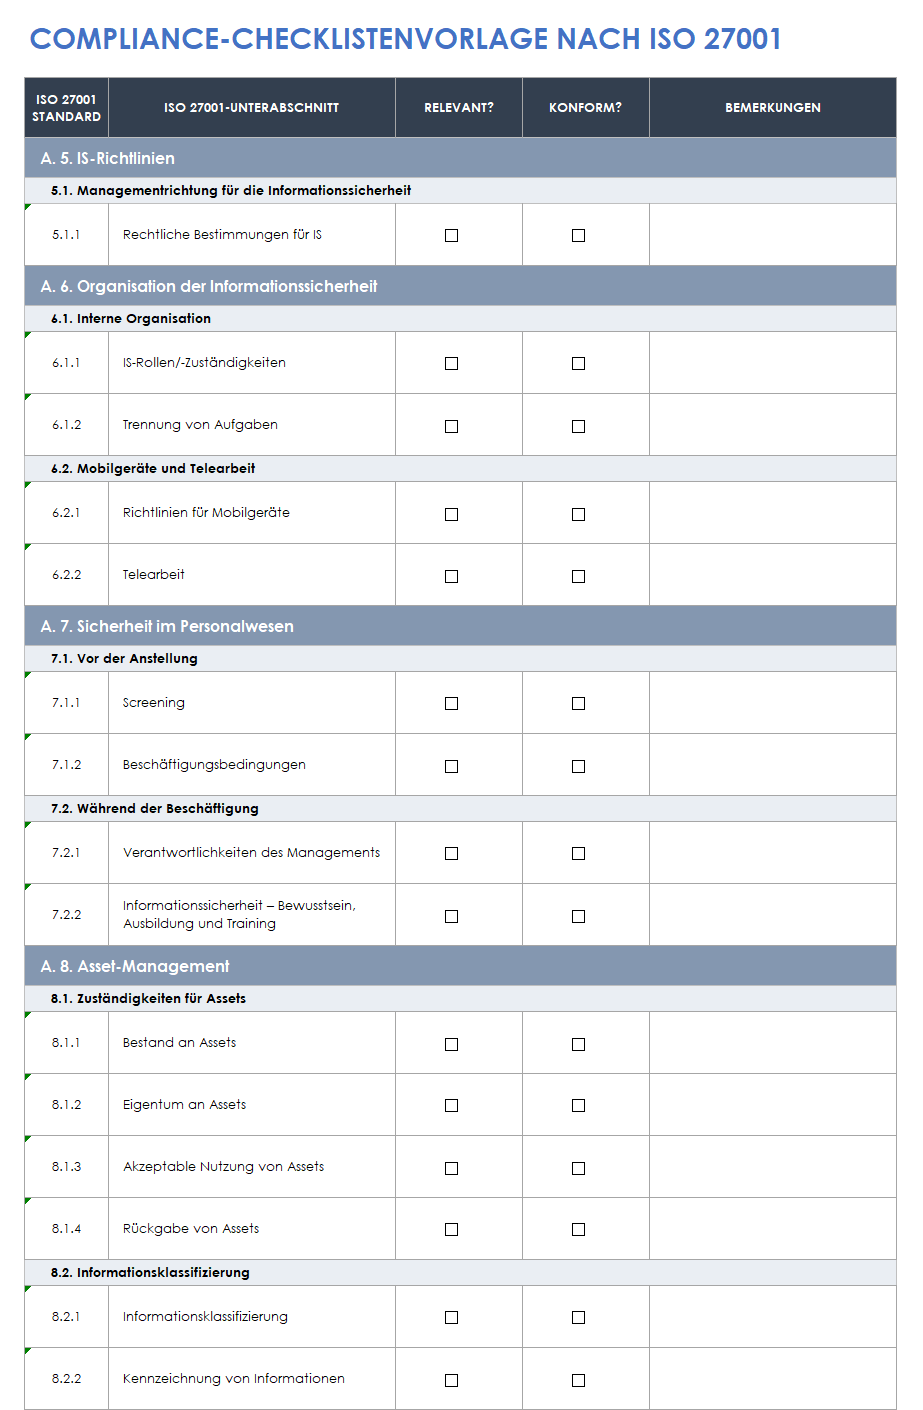  Vorlage für die ISO-27001-Compliance-Checkliste